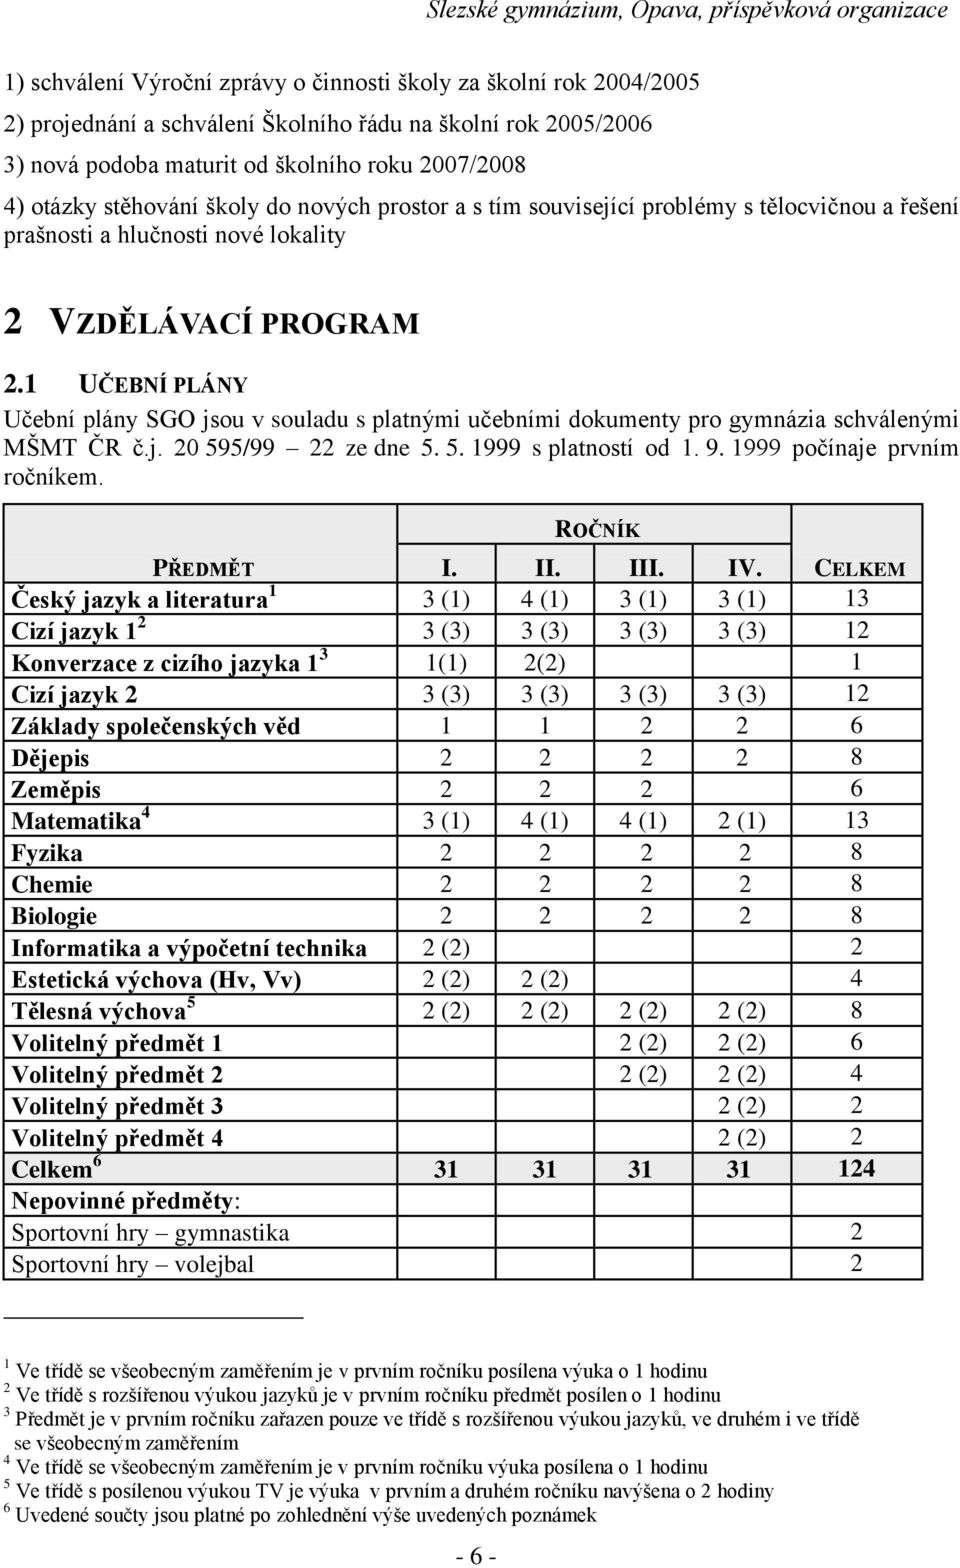 1 UČEBNÍ PLÁNY Učební plány SGO jsou v souladu s platnými učebními dokumenty pro gymnázia schválenými MŠMT ČR č.j. 20 595/99 22 ze dne 5. 5. 1999 s platností od 1. 9. 1999 počínaje prvním ročníkem.